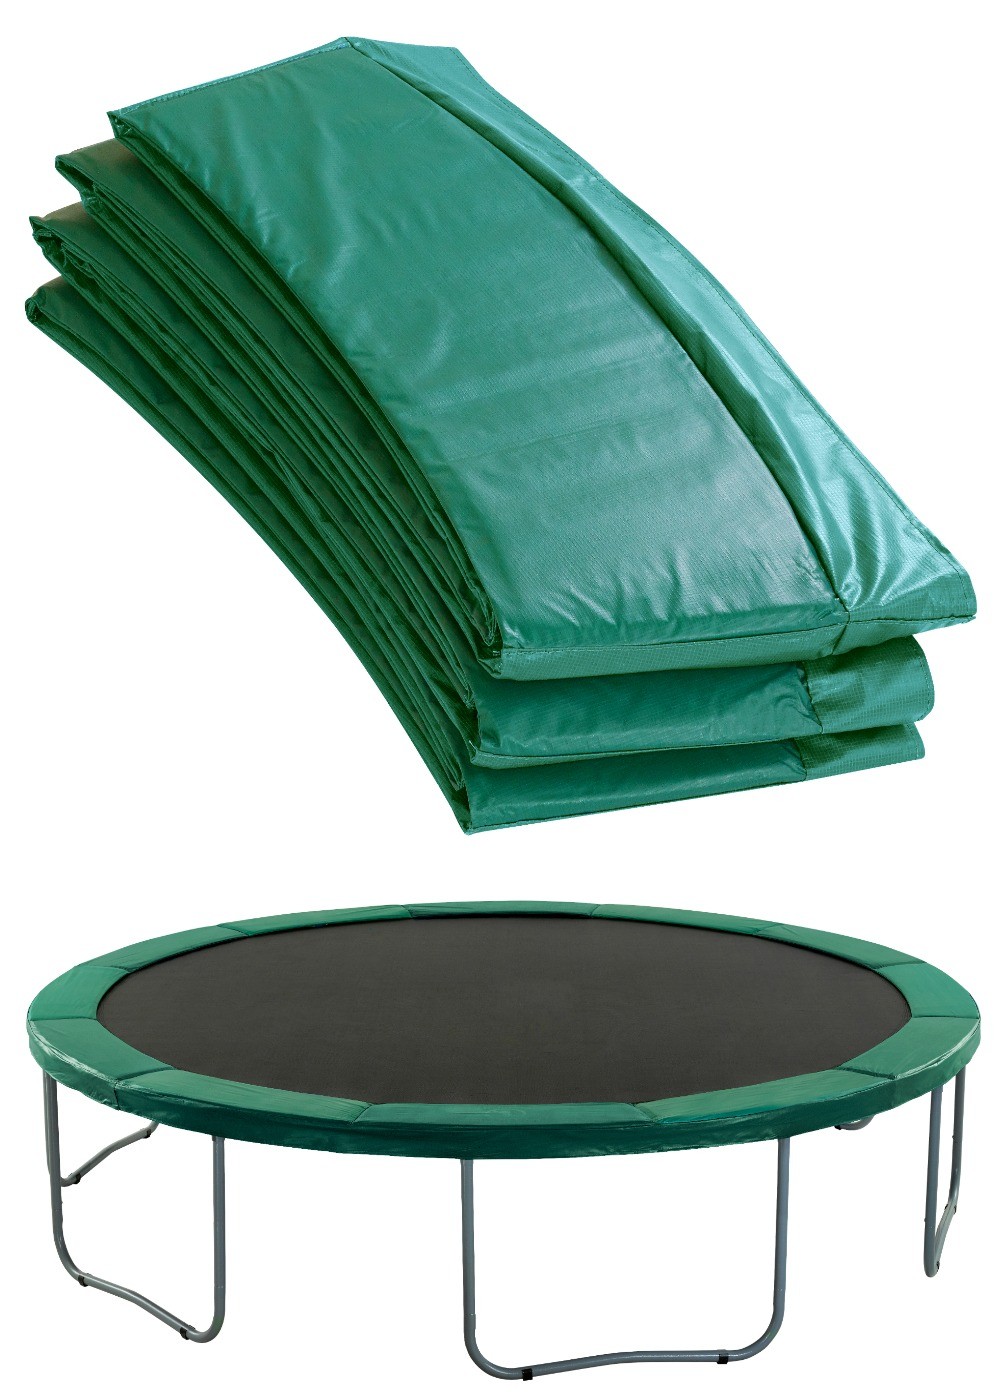 Copertura bordo bordo imbottitura copertura in verde chiaro per trampolino elastico da 487 a 490 cm 